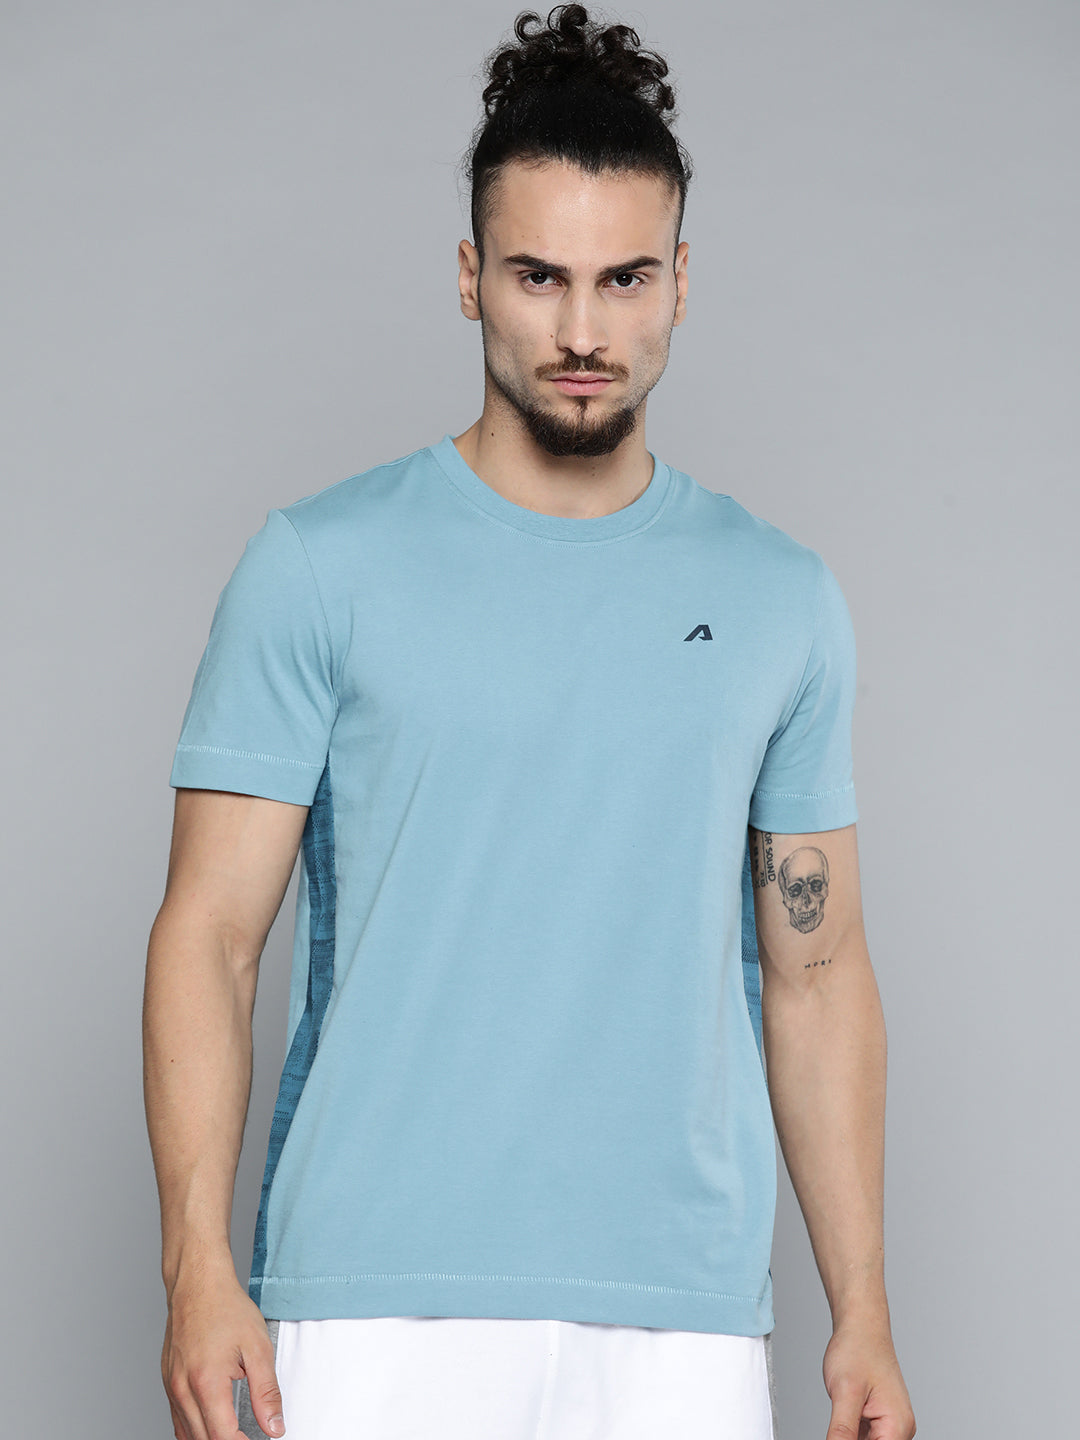 Alcis Men Blue Solid Slim Fit Gym T-shirt